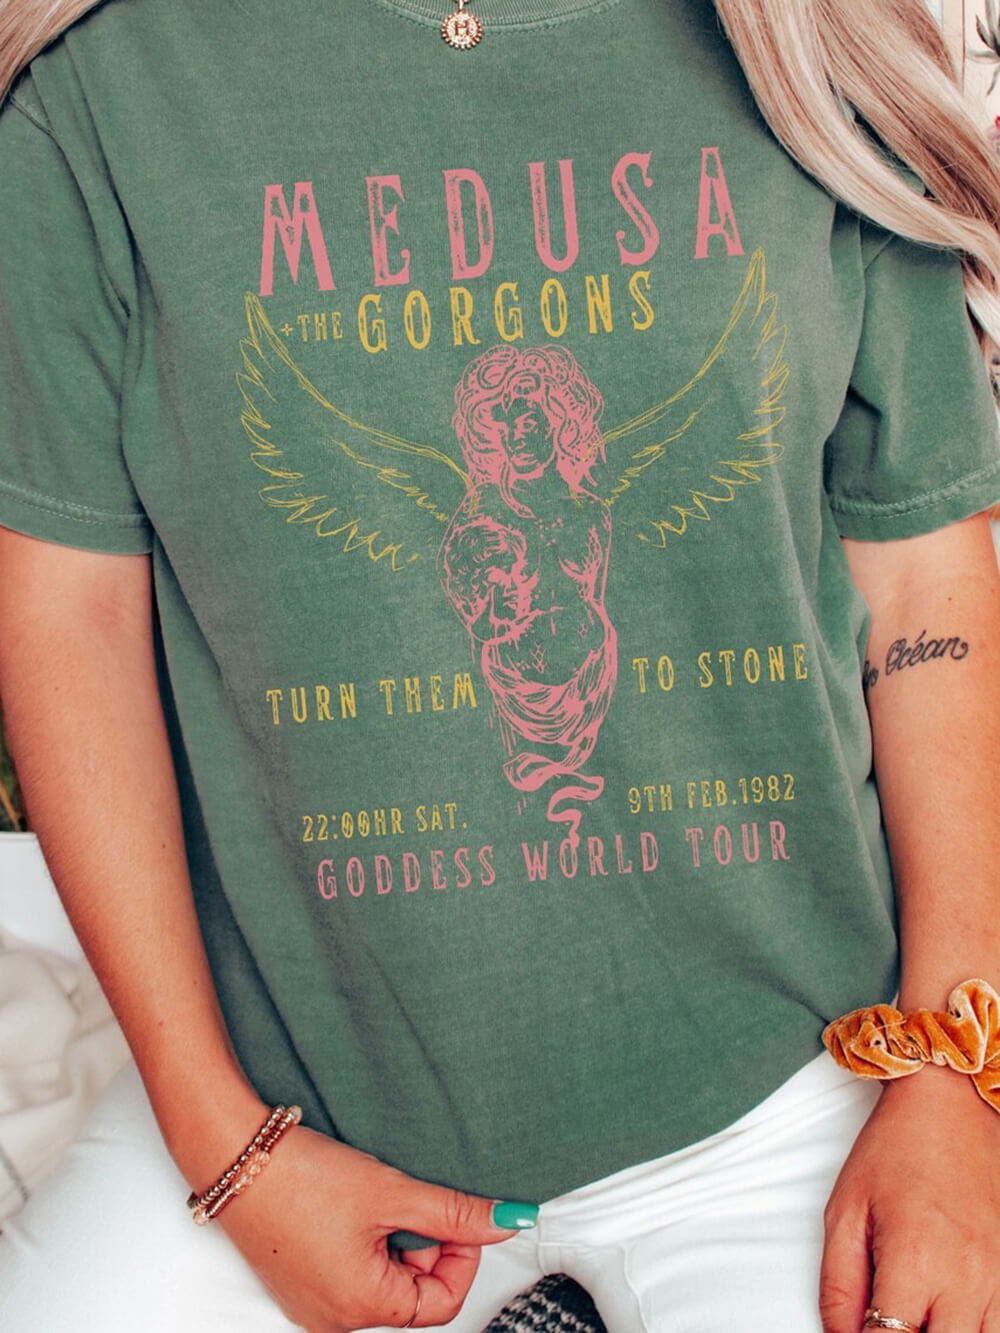 Görög Goddess Medusa Tee Vintage Band póló